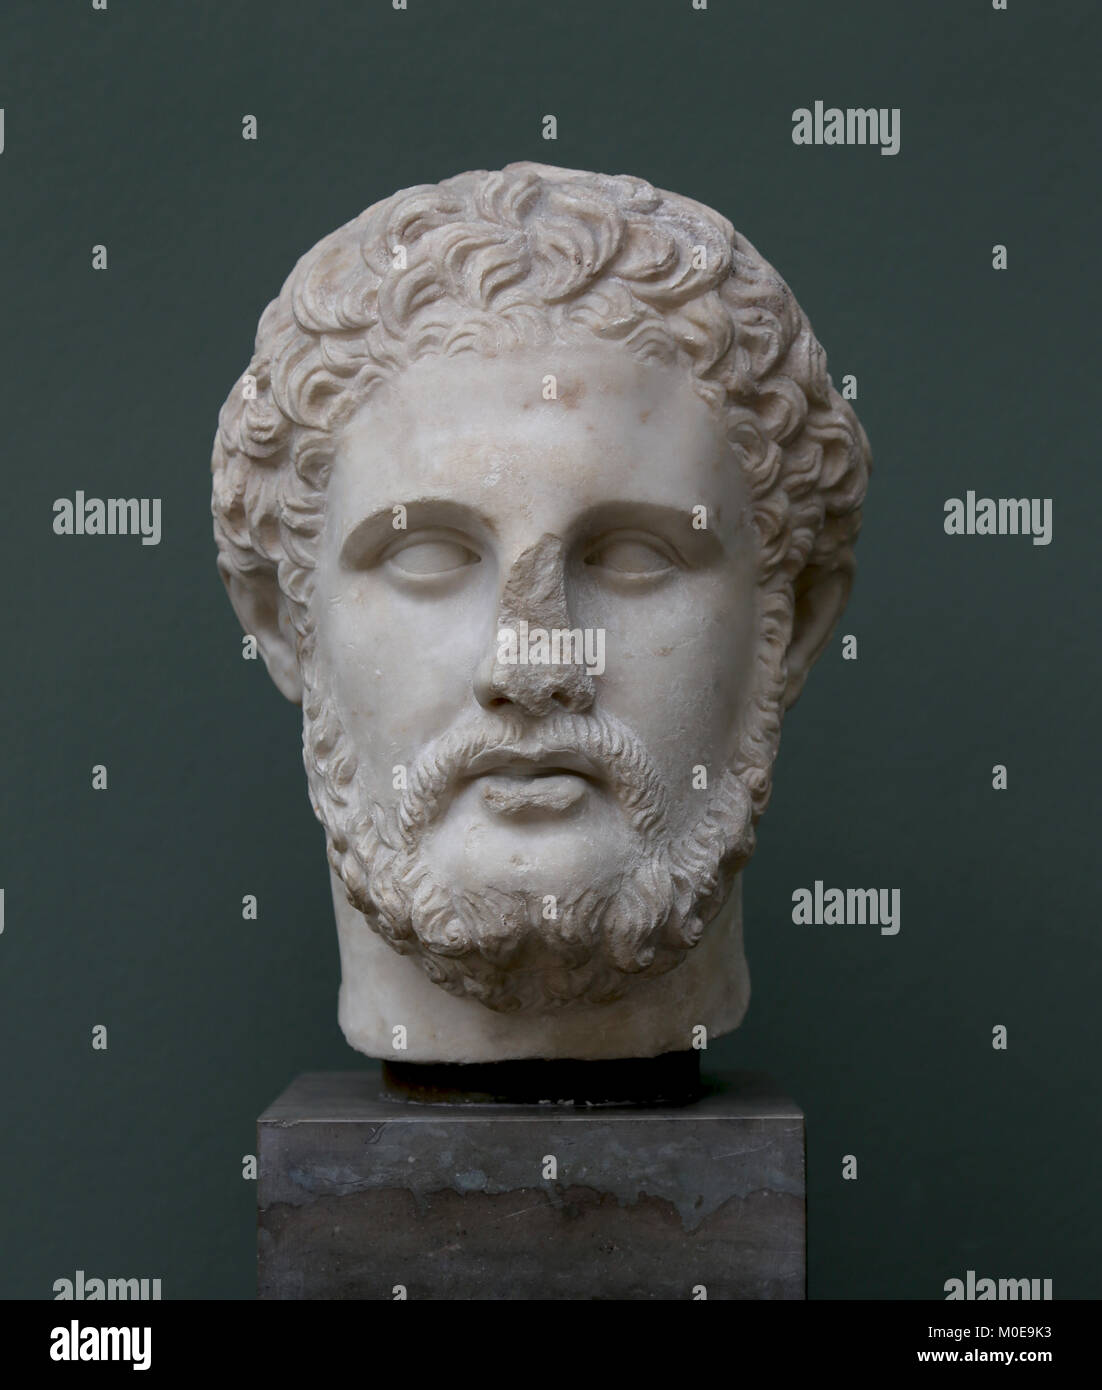 Felipe II de Macedonia (359-336 a.C.) el rey del antiguo reino griego de Macedonia. Copia romana de un original griego. Foto de stock